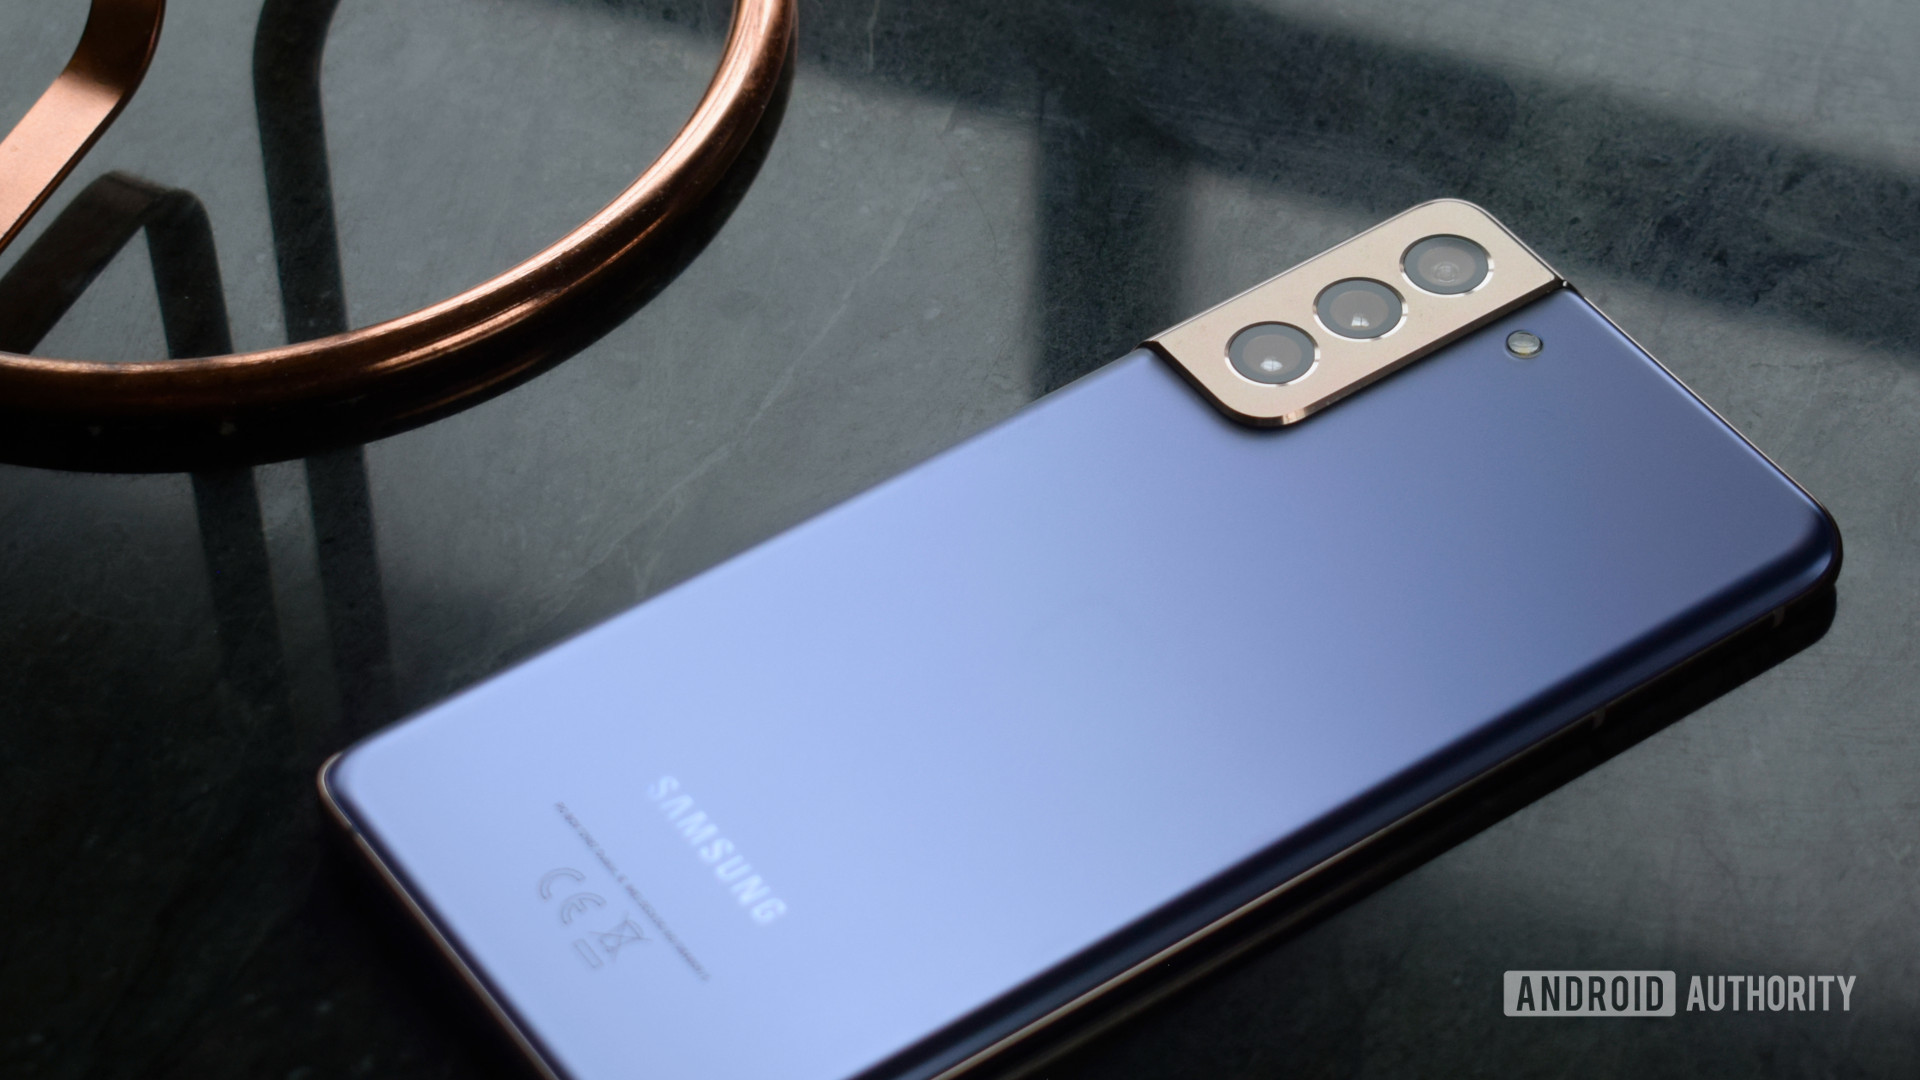 Galaxy S21 Ultra 6.7 Inch 5G Android Celular Versão Global smartphone Para  Telefone - Desconto no Preço